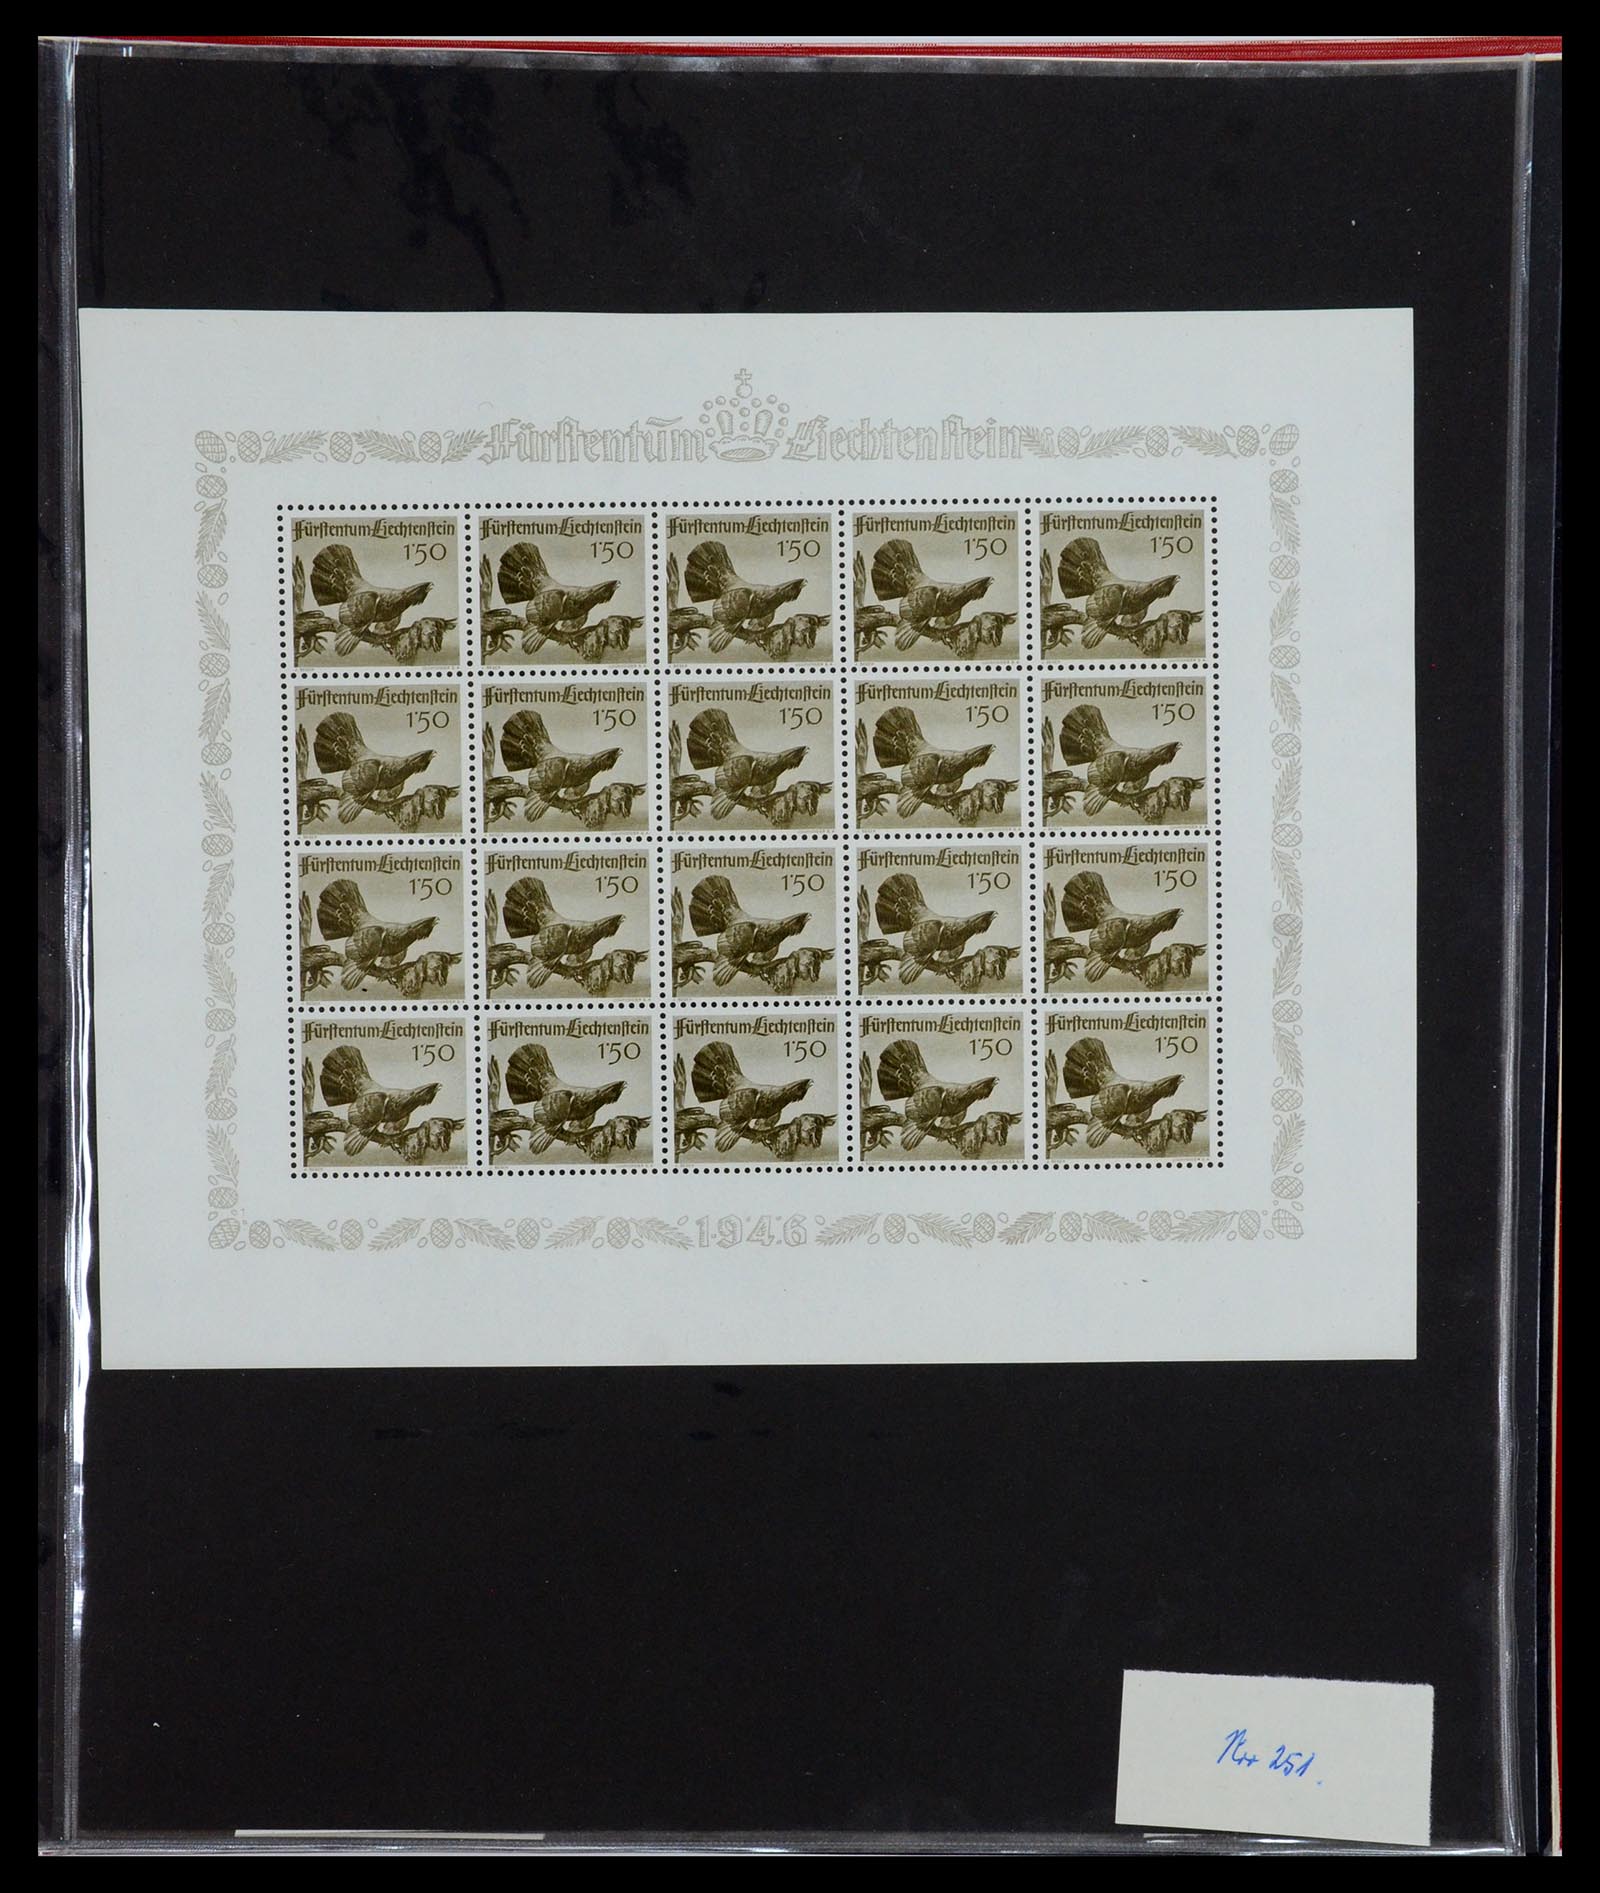 36280 043 - Stamp collection 36280 Liechtenstein souvenir sheets and sheetlets 1934-